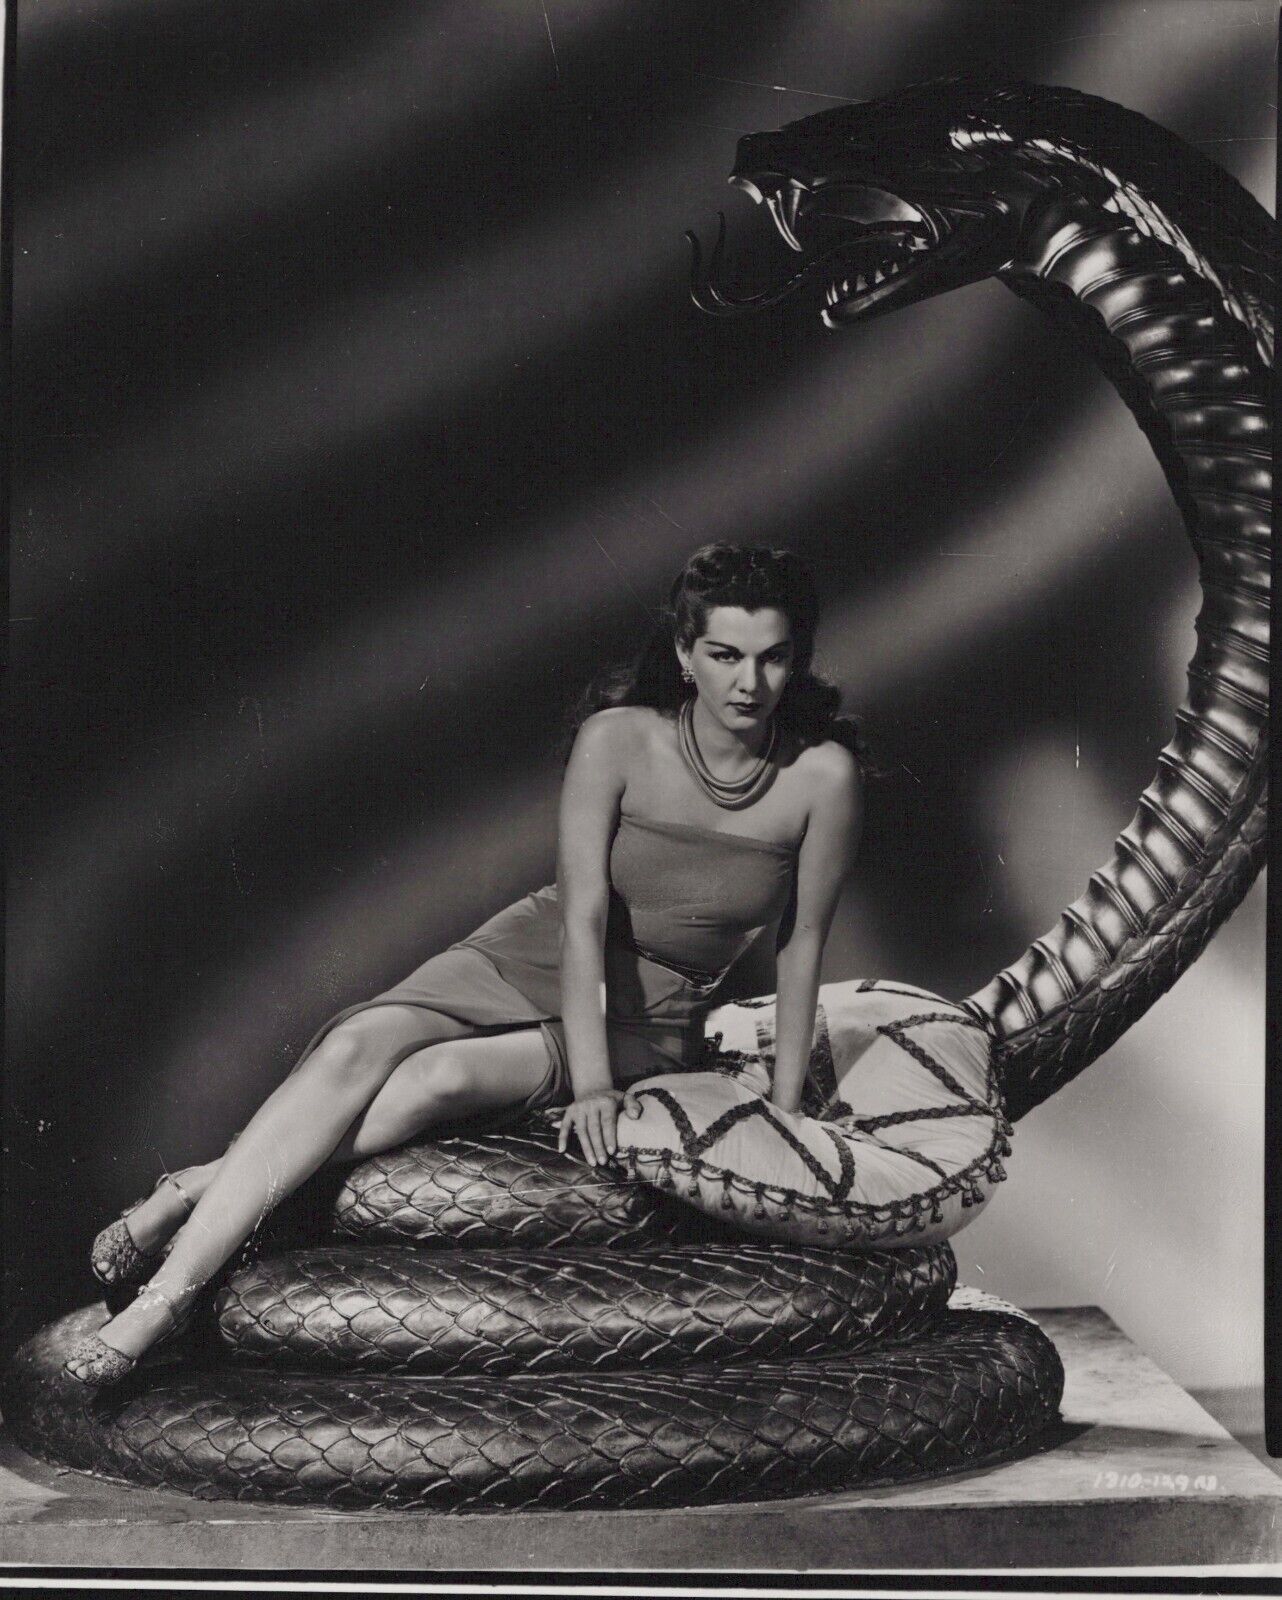 Maria Montez (1940s) ❤ Leggy Cheesecake Alluring Pose Vintage Photo K 520